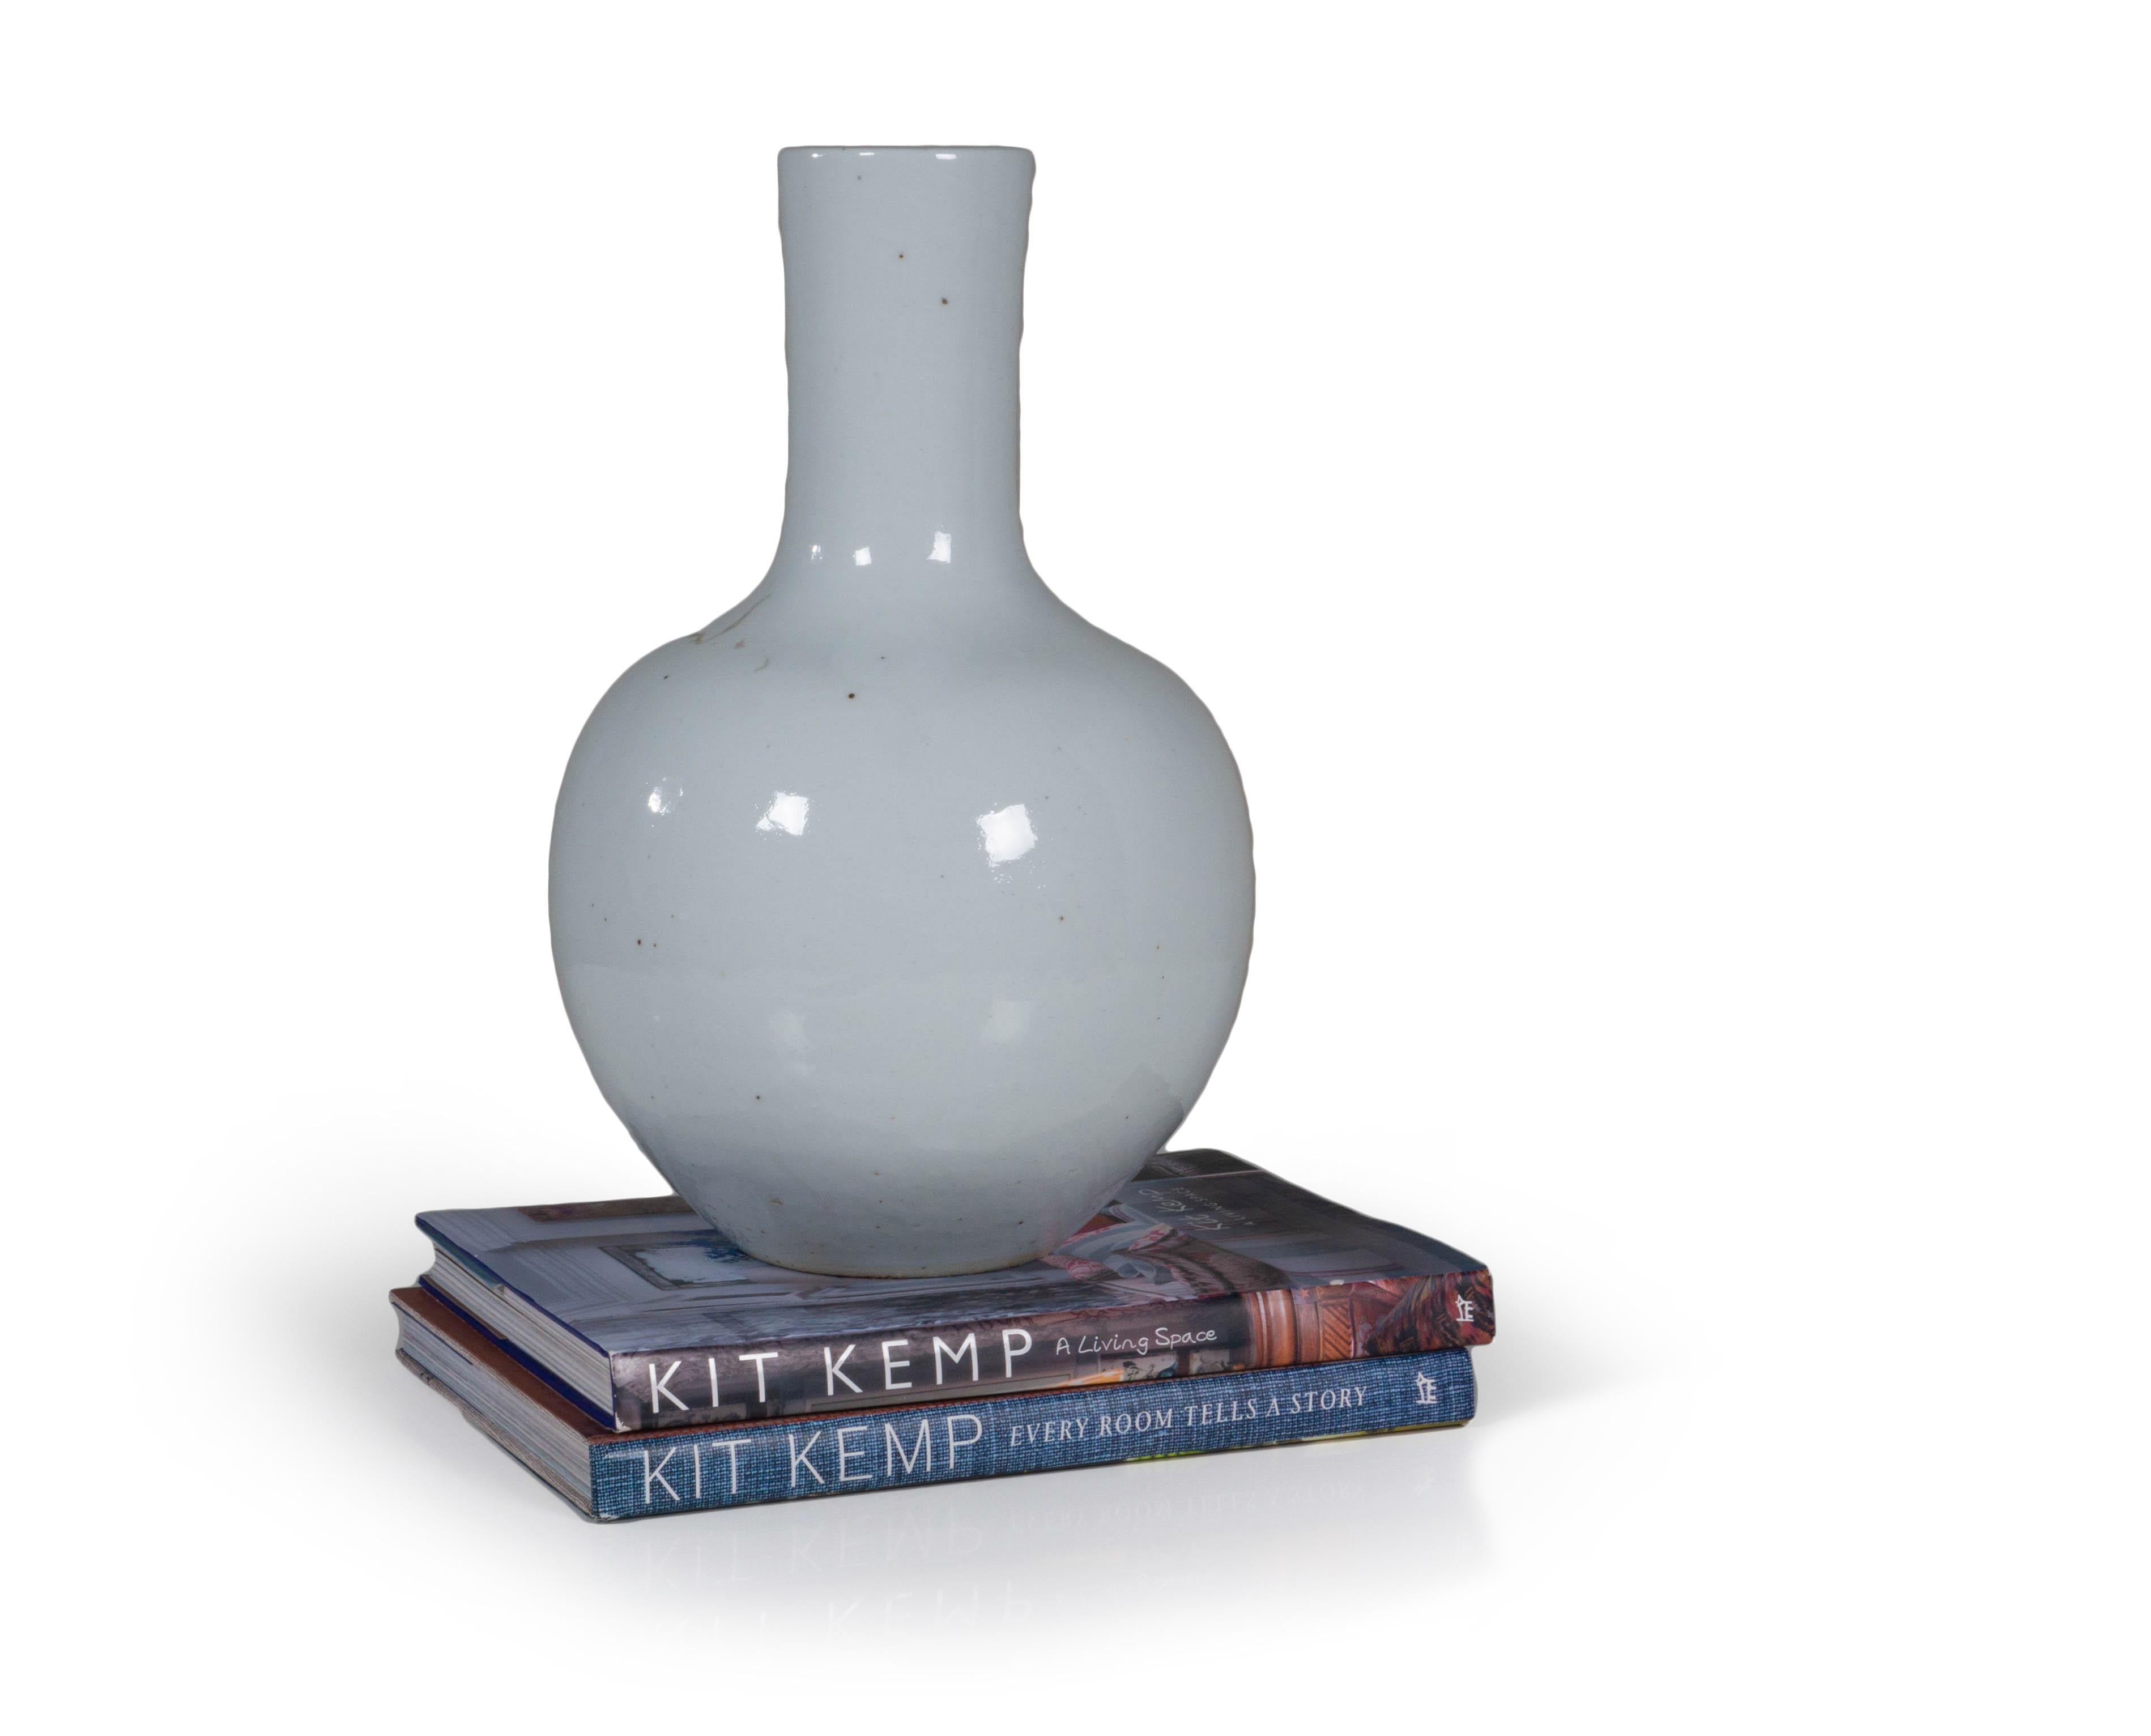 Une version moderne du vase classique, cette version en céramique blanche est une pièce polyvalente pour tout décor. Conçu avec une base large, ce design le rend parfait pour être associé à de plus grandes compositions. Cet élégant vase en céramique